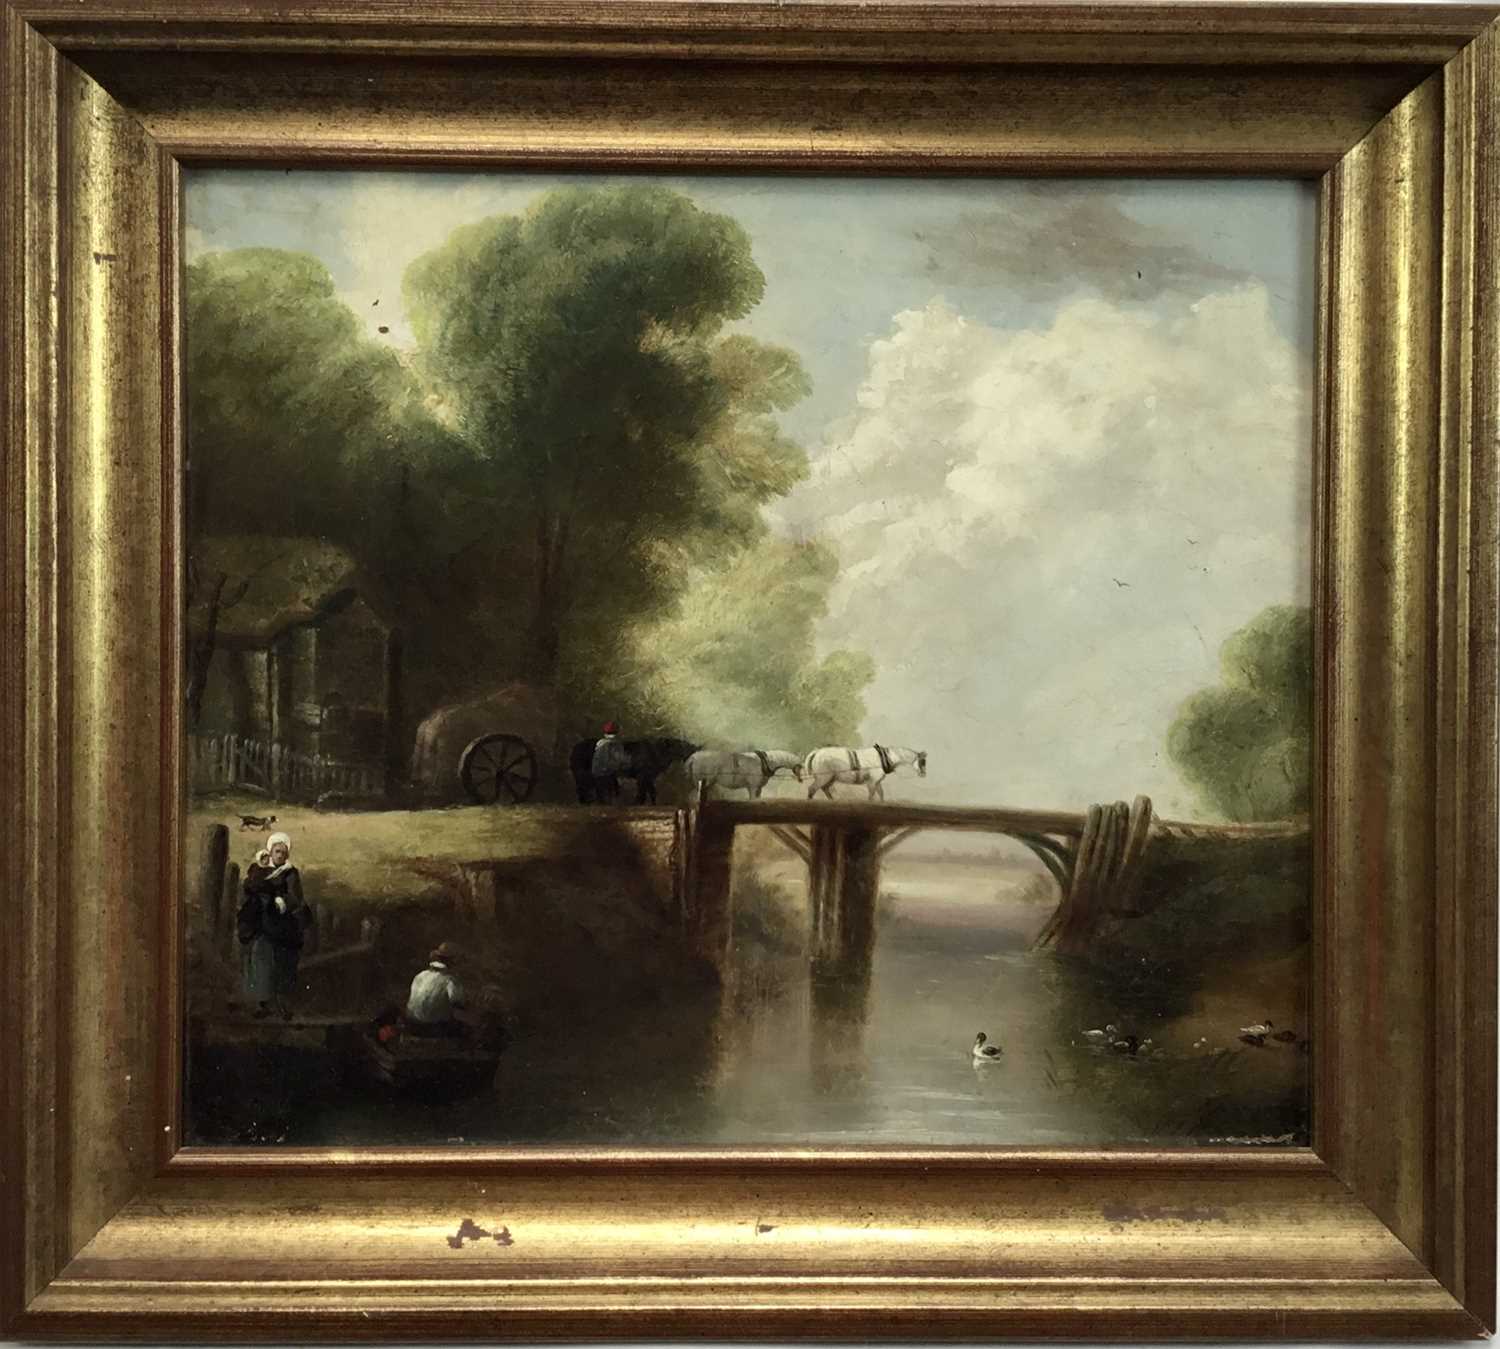 Lot 24 - 19th century English School oil on board - wagon crossing a bridge, 35cm x 31cm in gilt frame